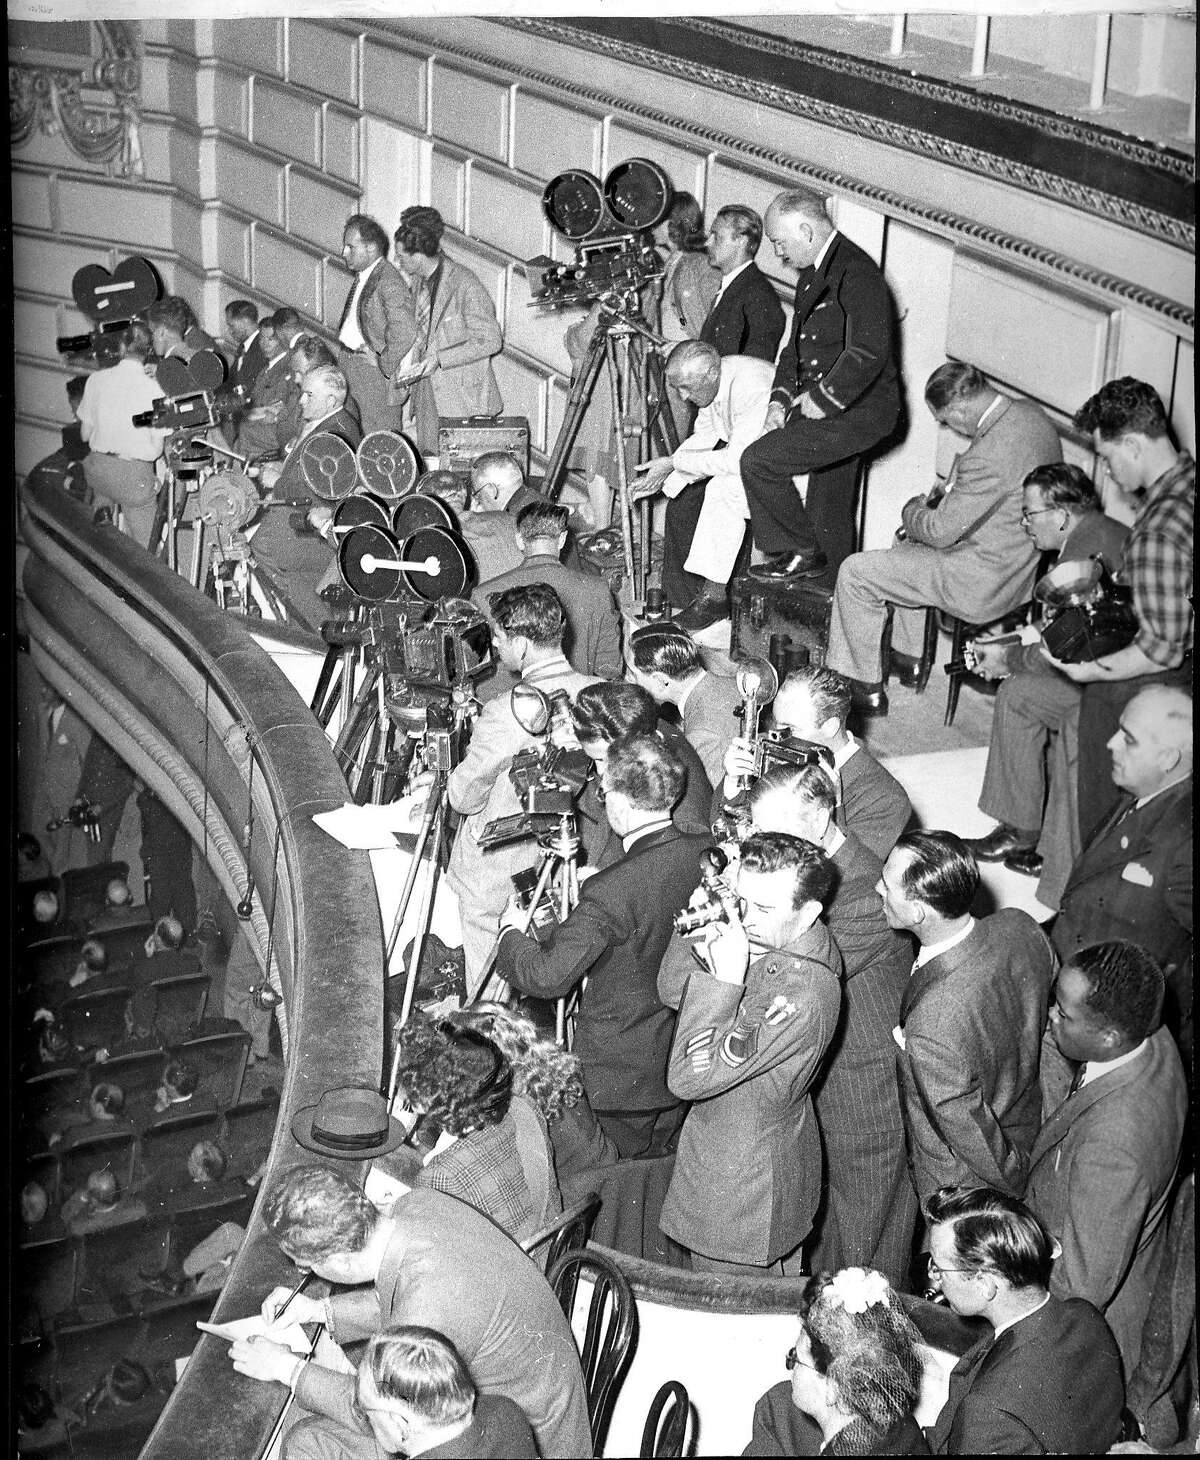 歌剧院的摄影师和摄像师记录了会议的活动，照片运行于1945年4月29日，第5页，可能是编年史照片，但没有摄影师记录联合国会议